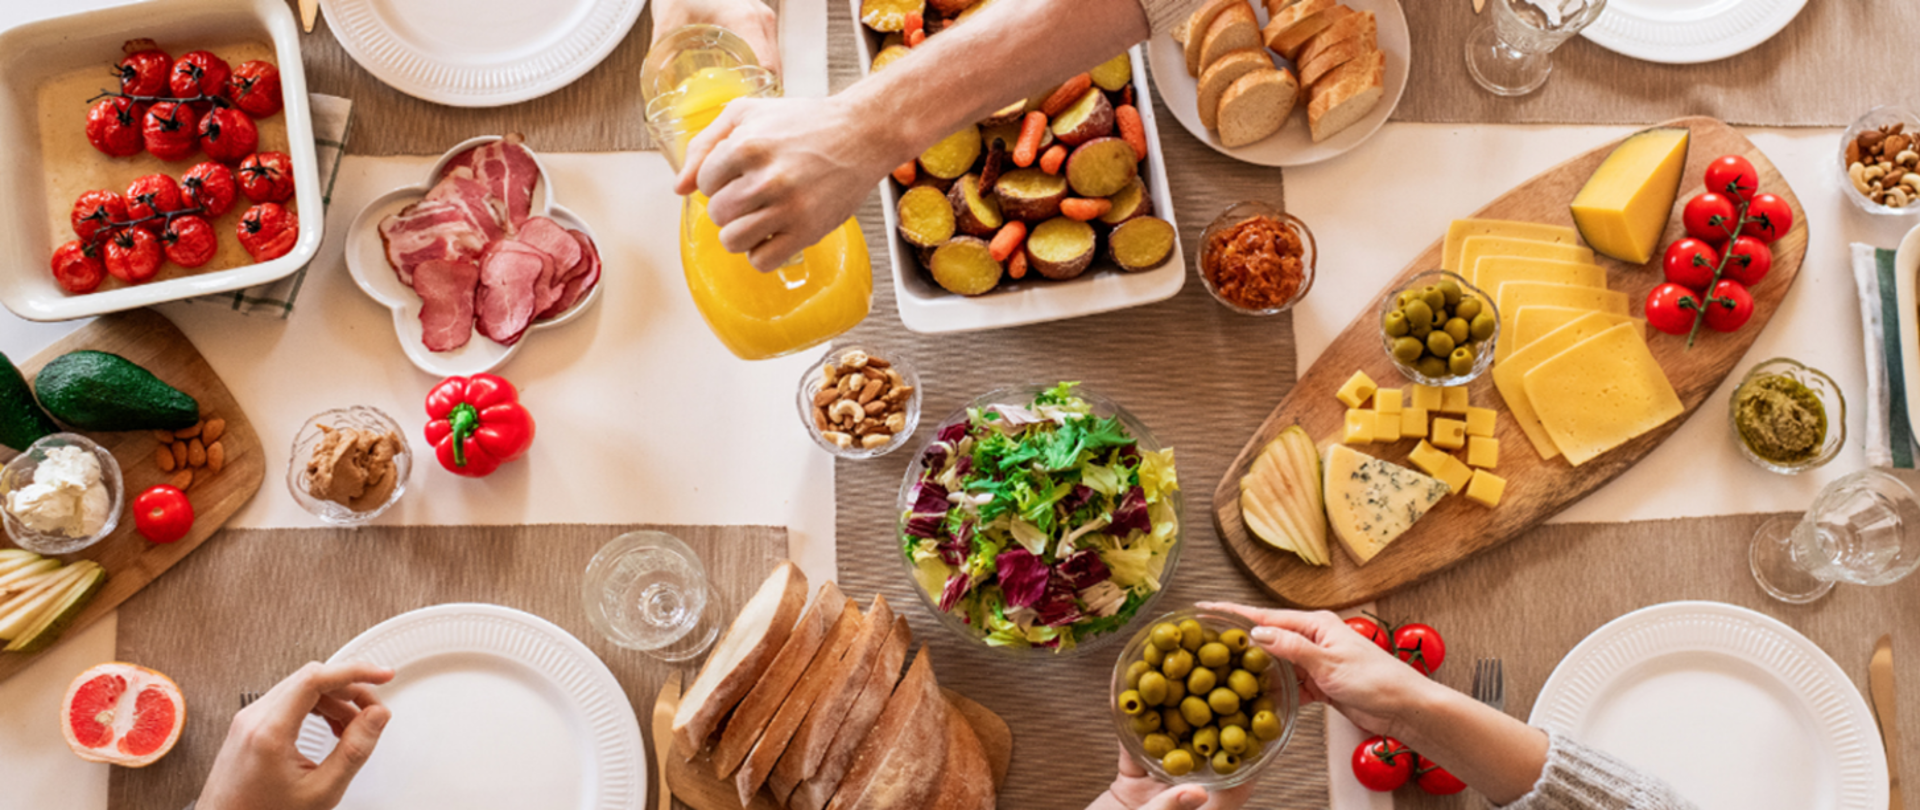 Stół zastawiony zdrową i bezpieczną żywnością, którą częstują się członkowie rodziny